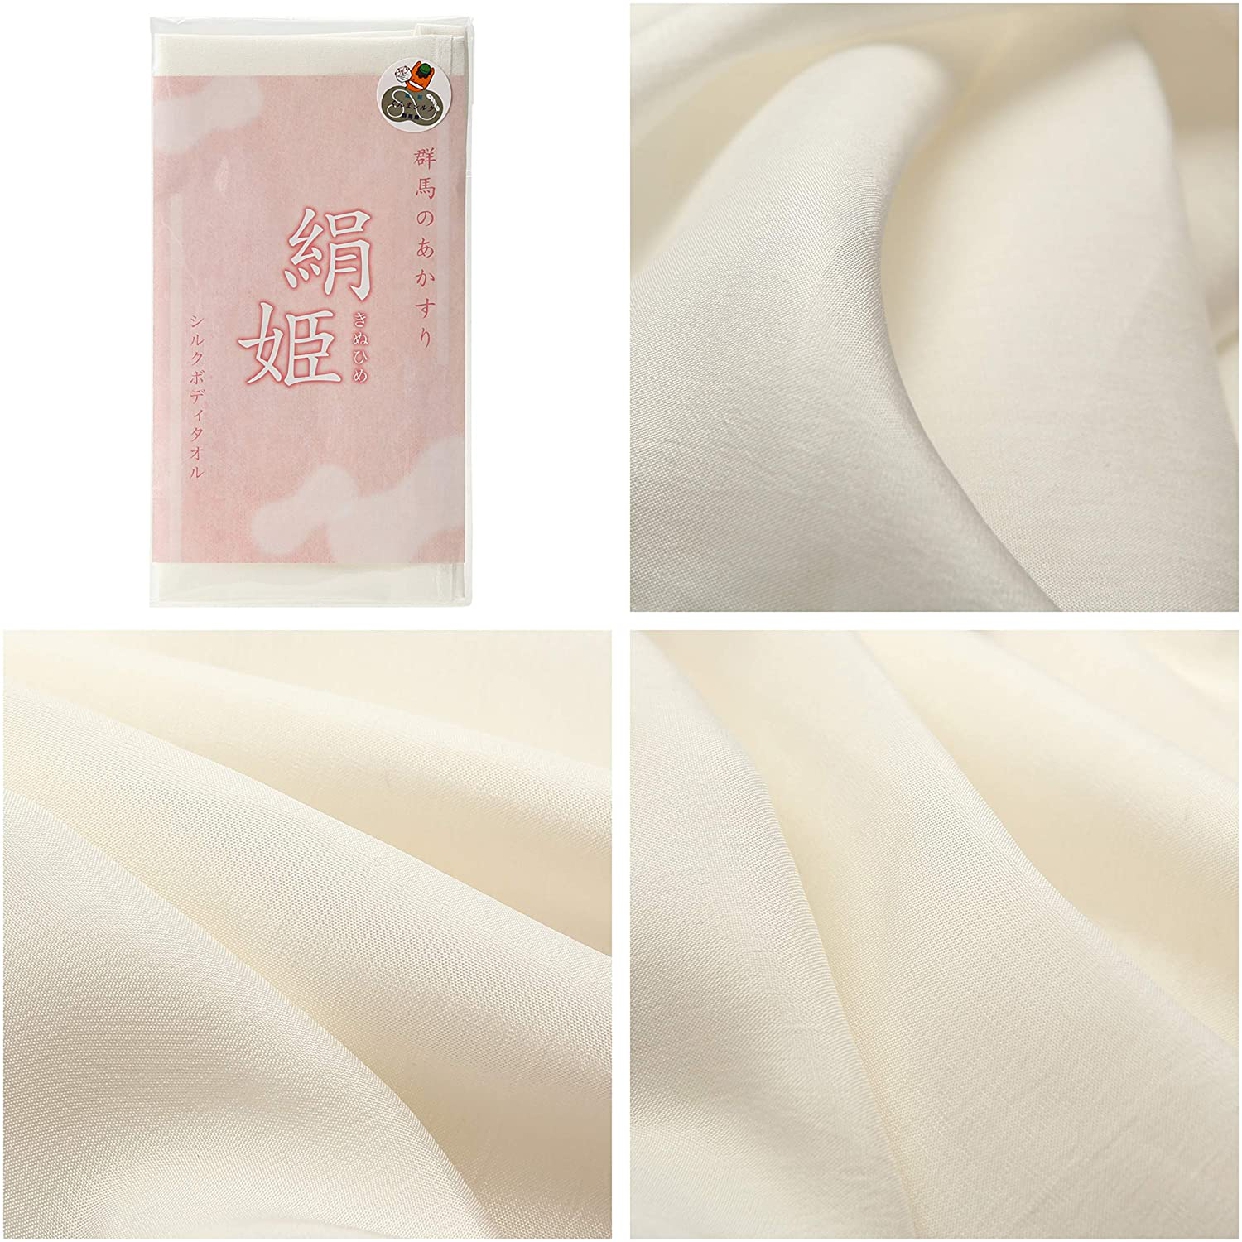 Happy Silk(ハッピーシルク) ボディタオル 絹姫の商品画像2 